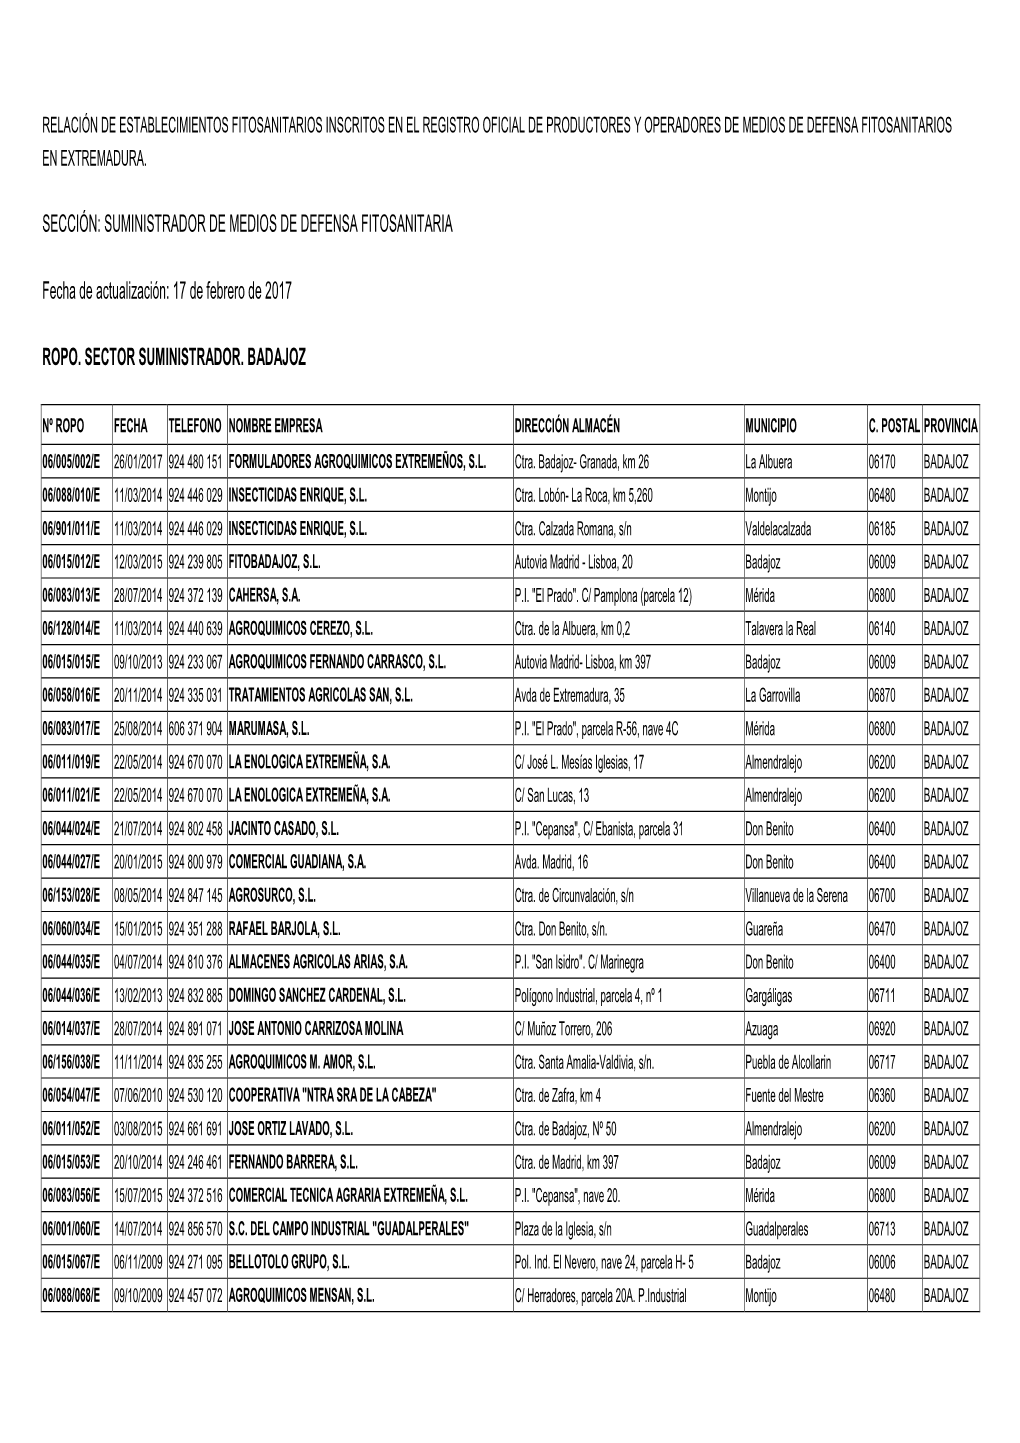 Establecimientos Fitosanitarios Inscritos En El Registro Oficial De Productores Y Operadores De Medios De Defensa Fitosanitarios En Extremadura